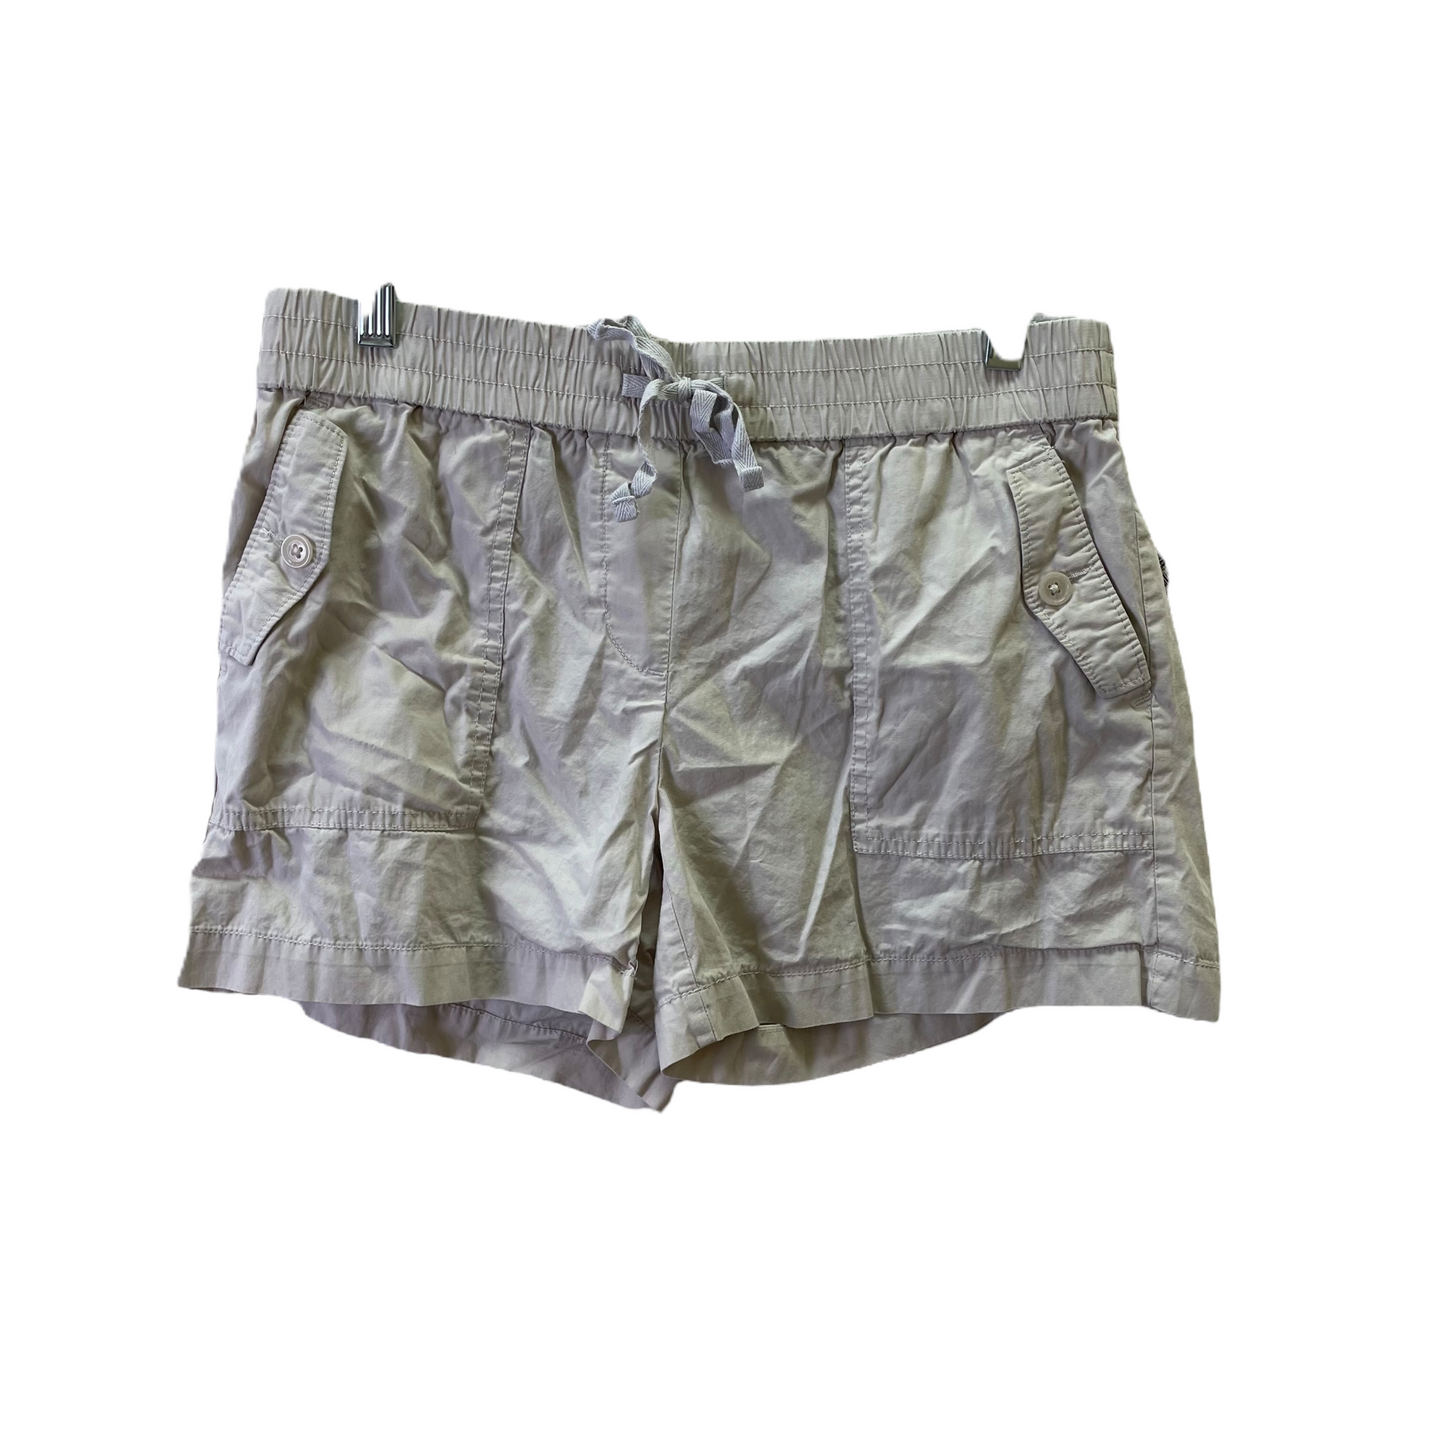 Tan Shorts By Loft, Size: 4